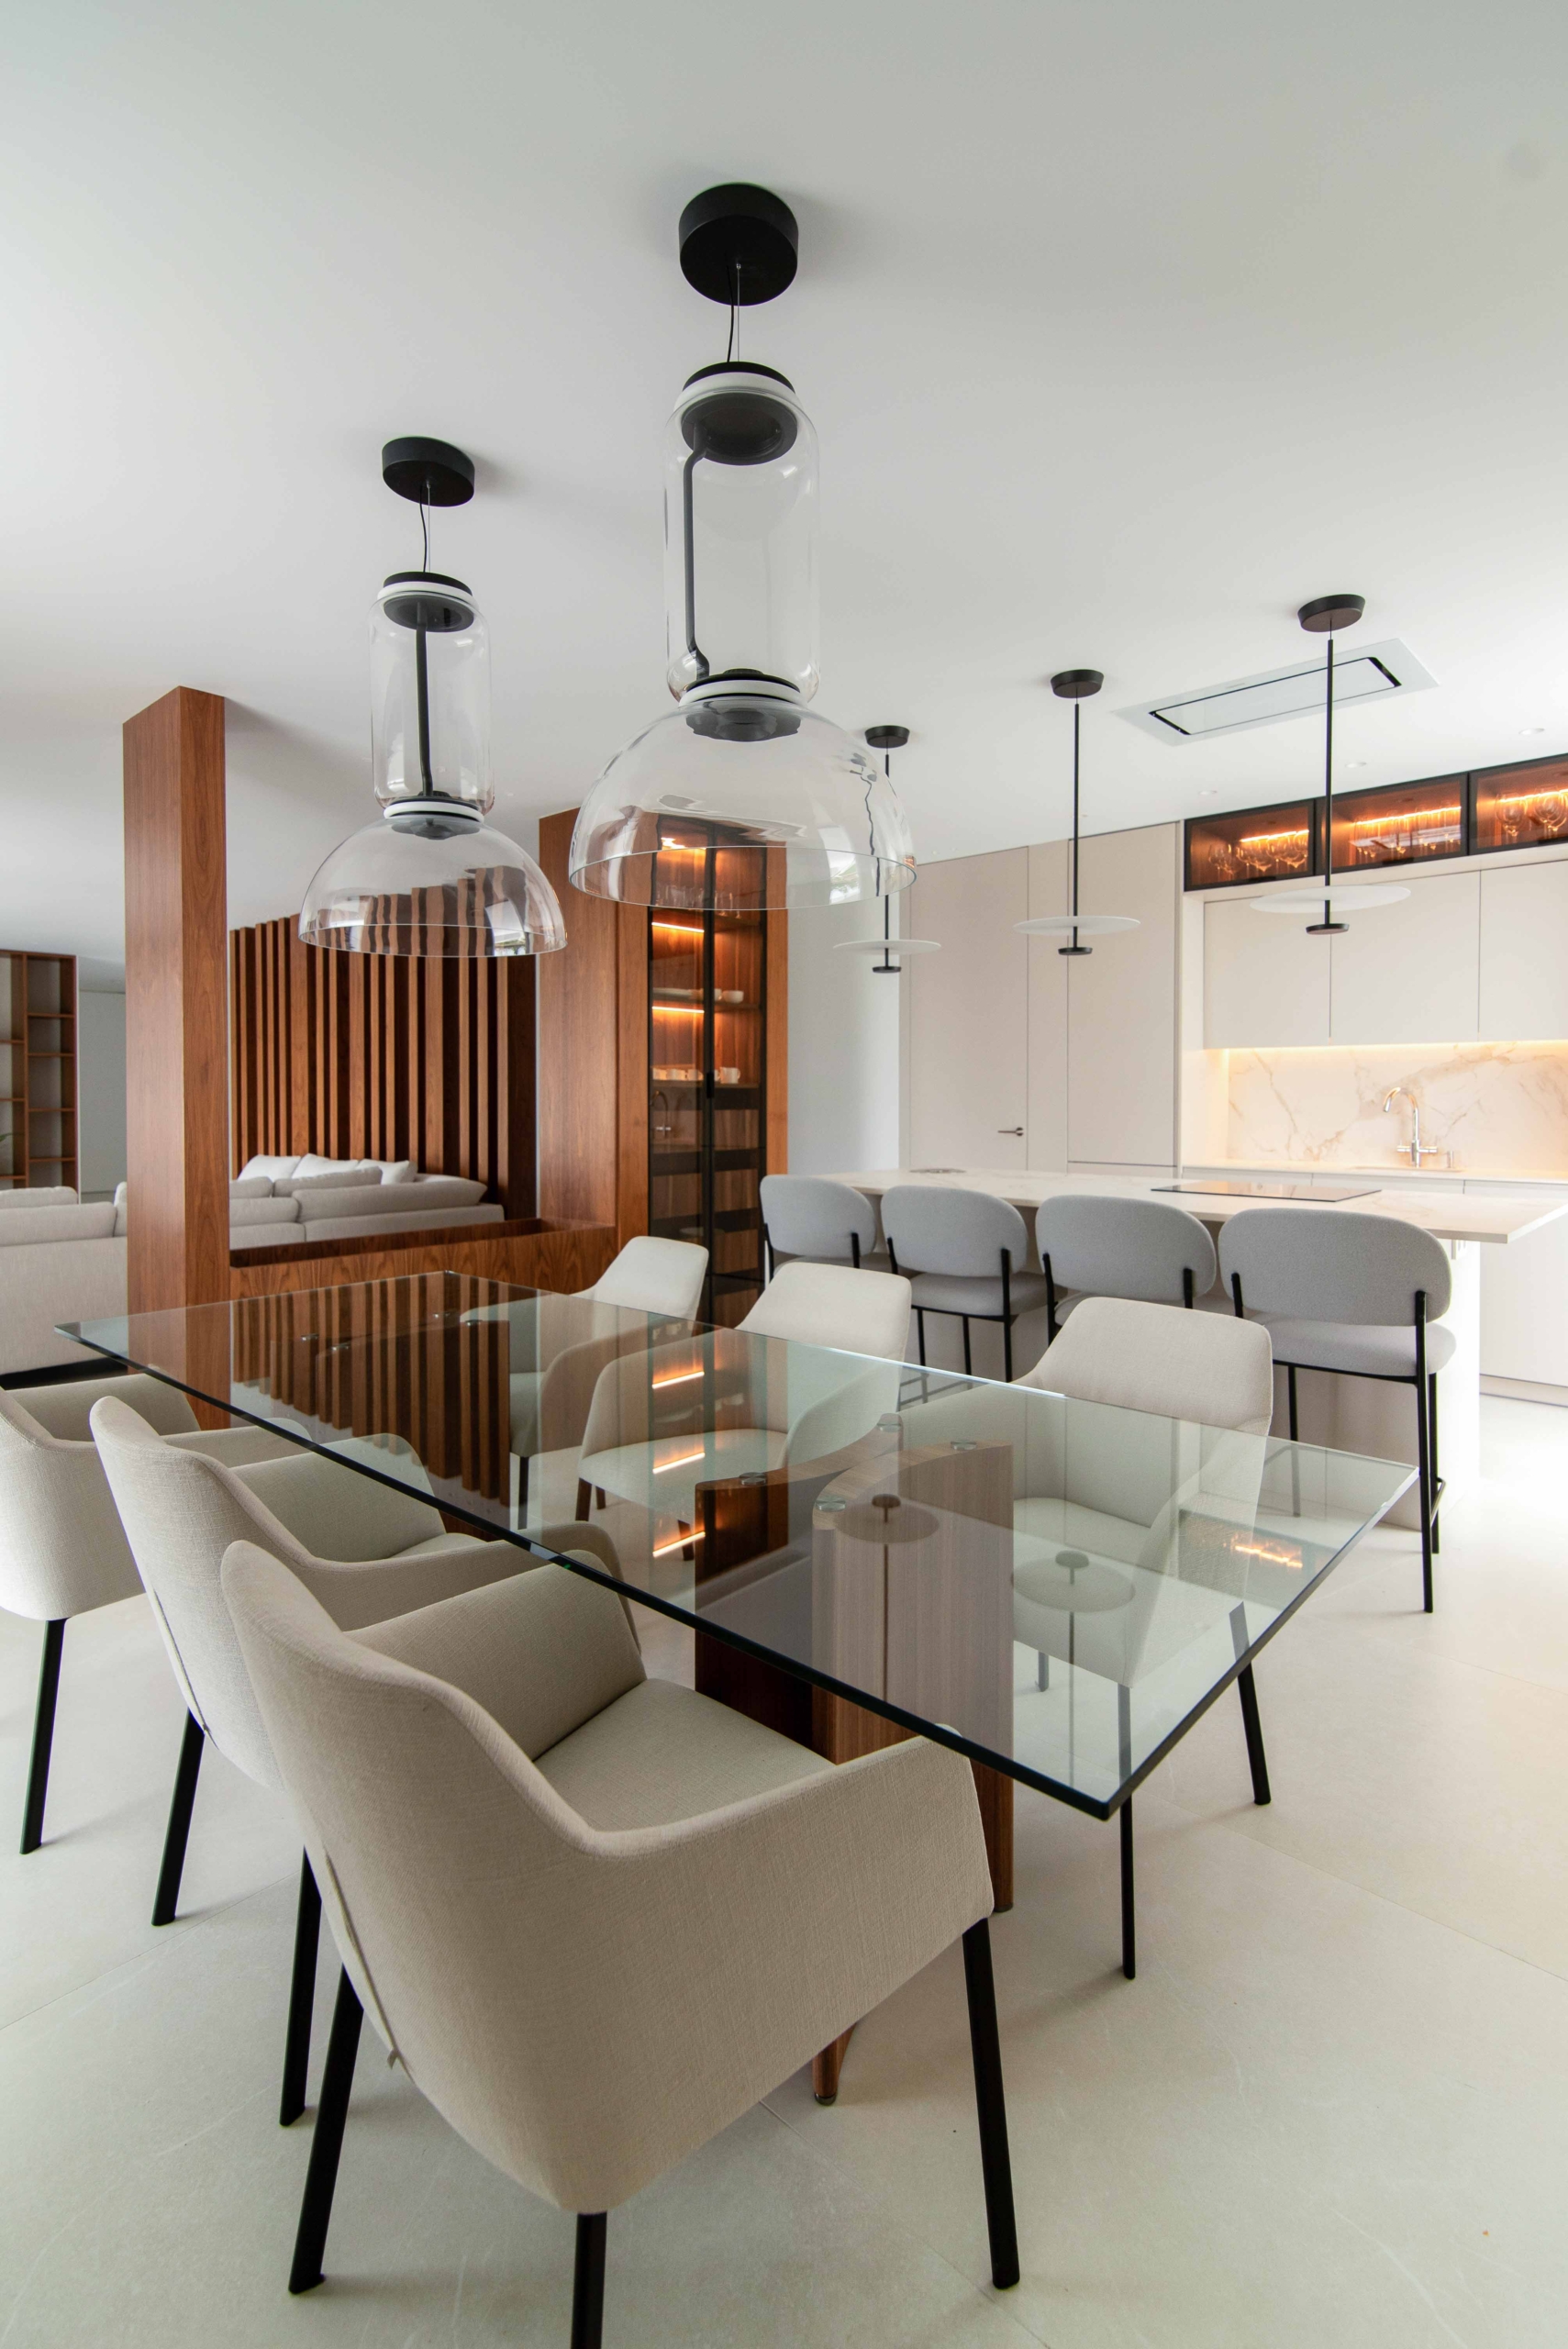 Casa modular de lujo en Valencia, vista salón-comedor con detalles de madera tecnológica